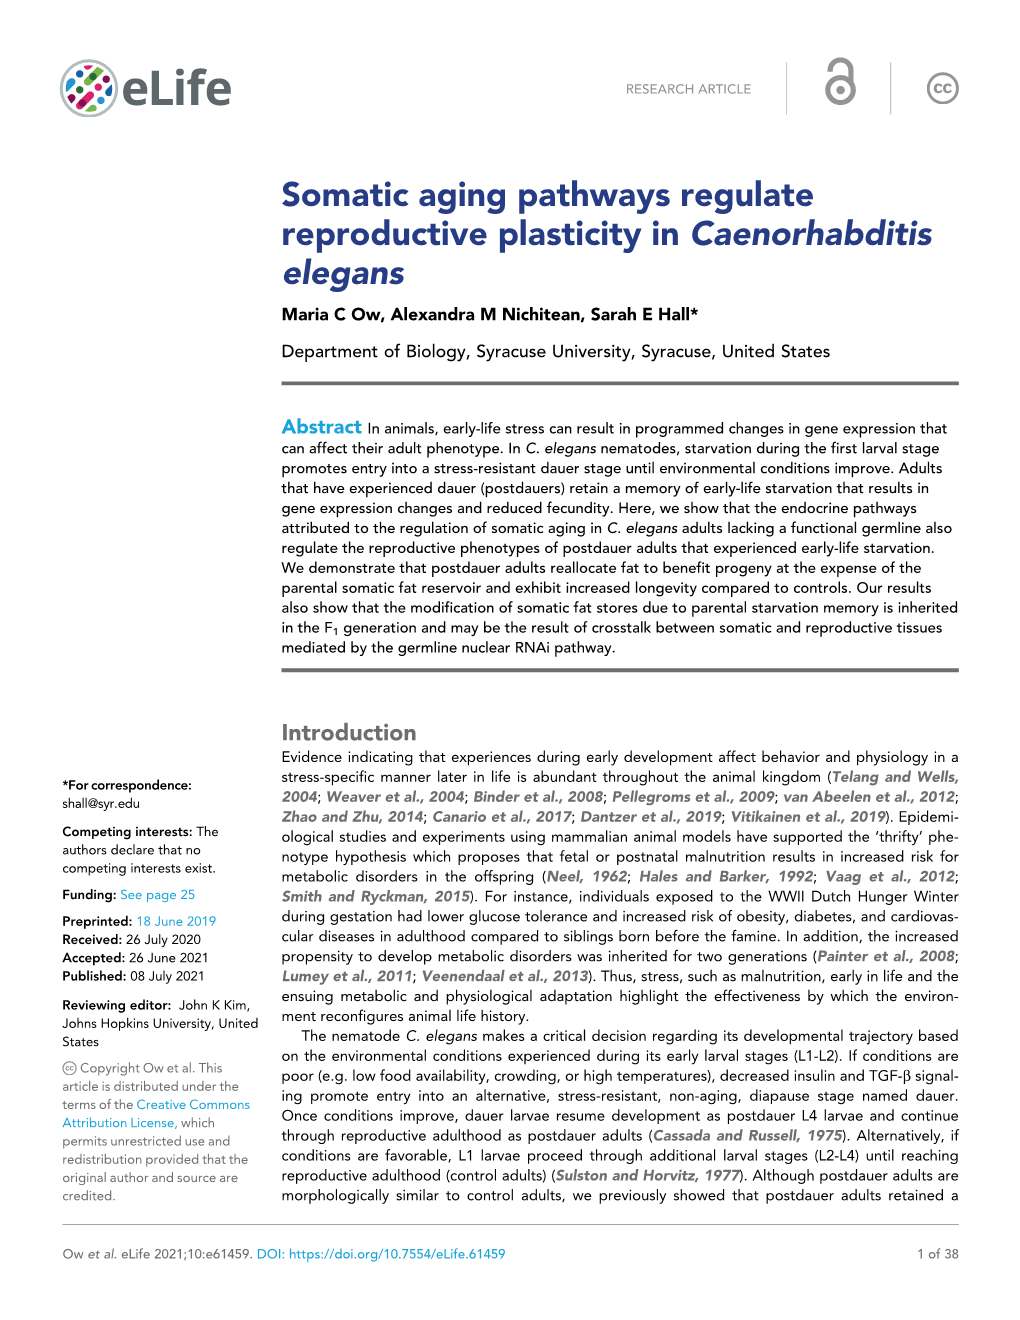 Somatic Aging Pathways Regulate Reproductive Plasticity in Caenorhabditis Elegans Maria C Ow, Alexandra M Nichitean, Sarah E Hall*